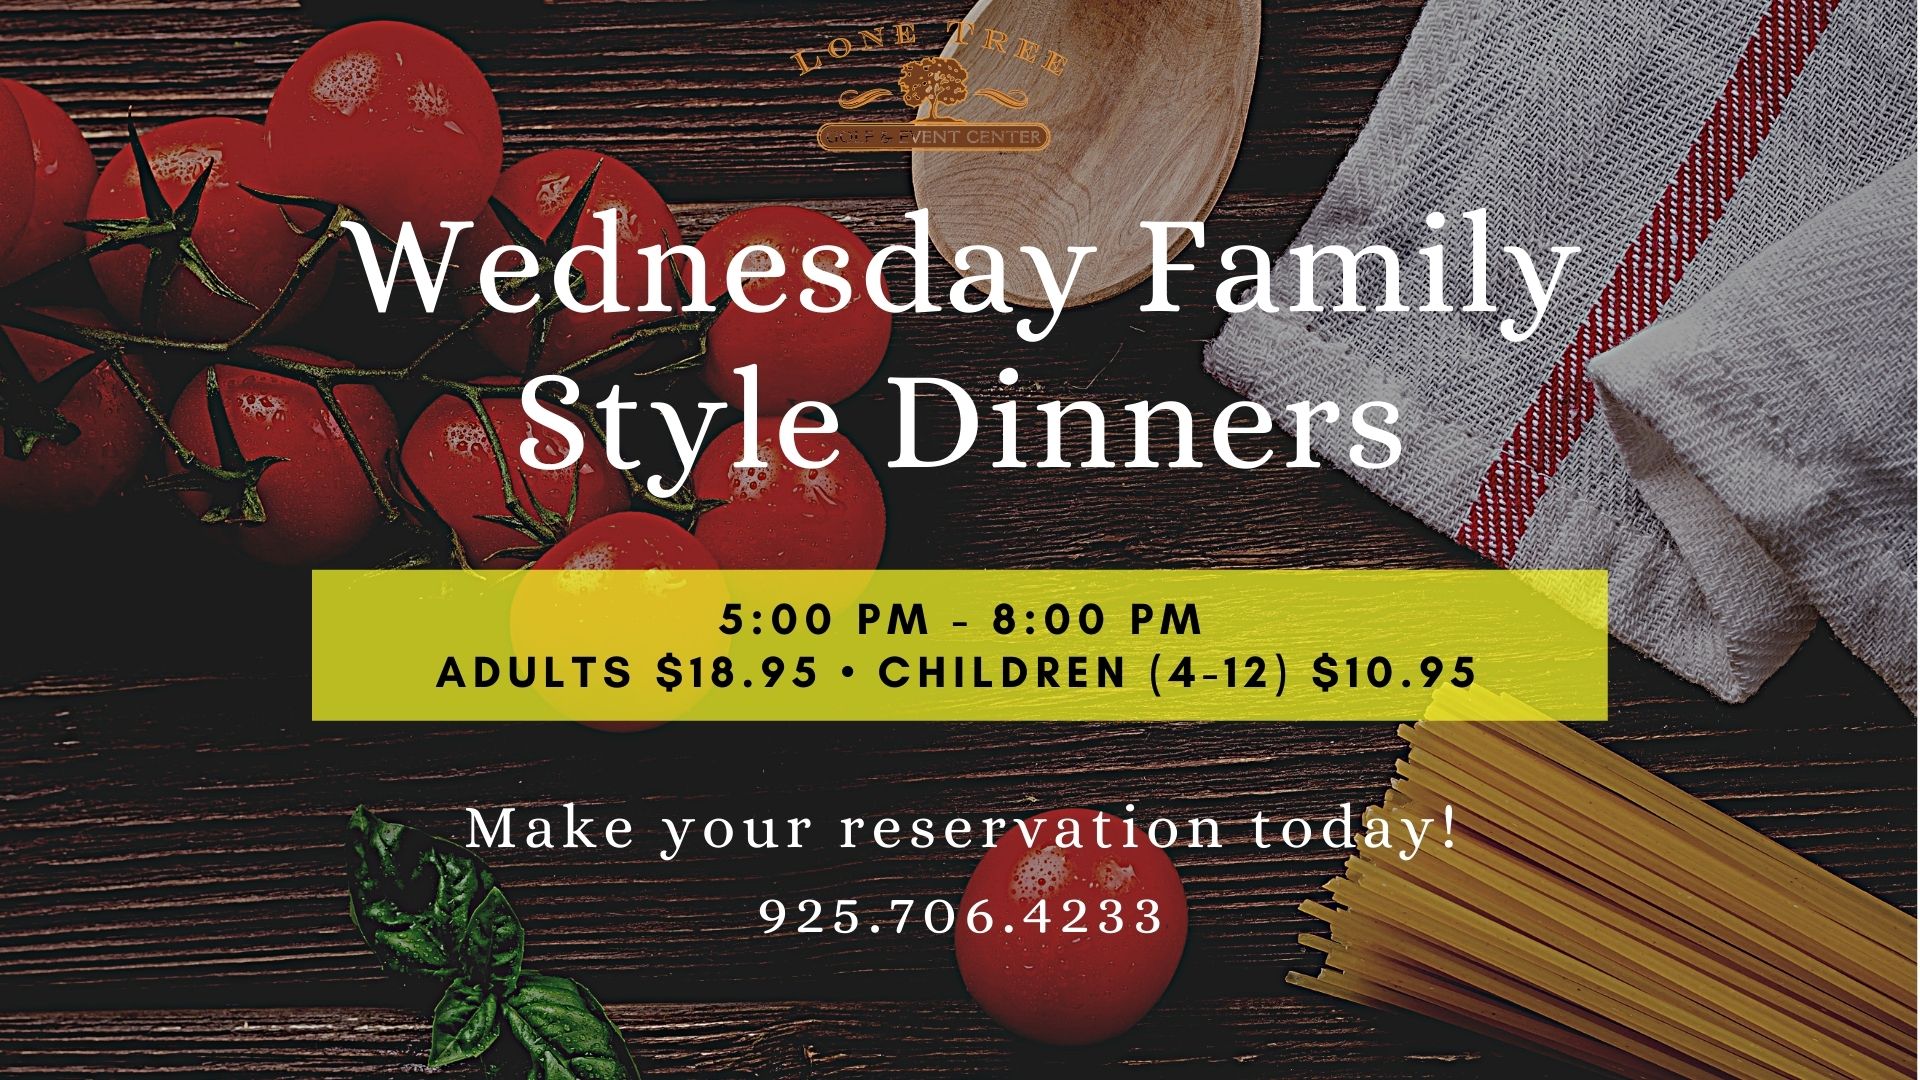 Wednesday Family Style Dinner Slide 2021 